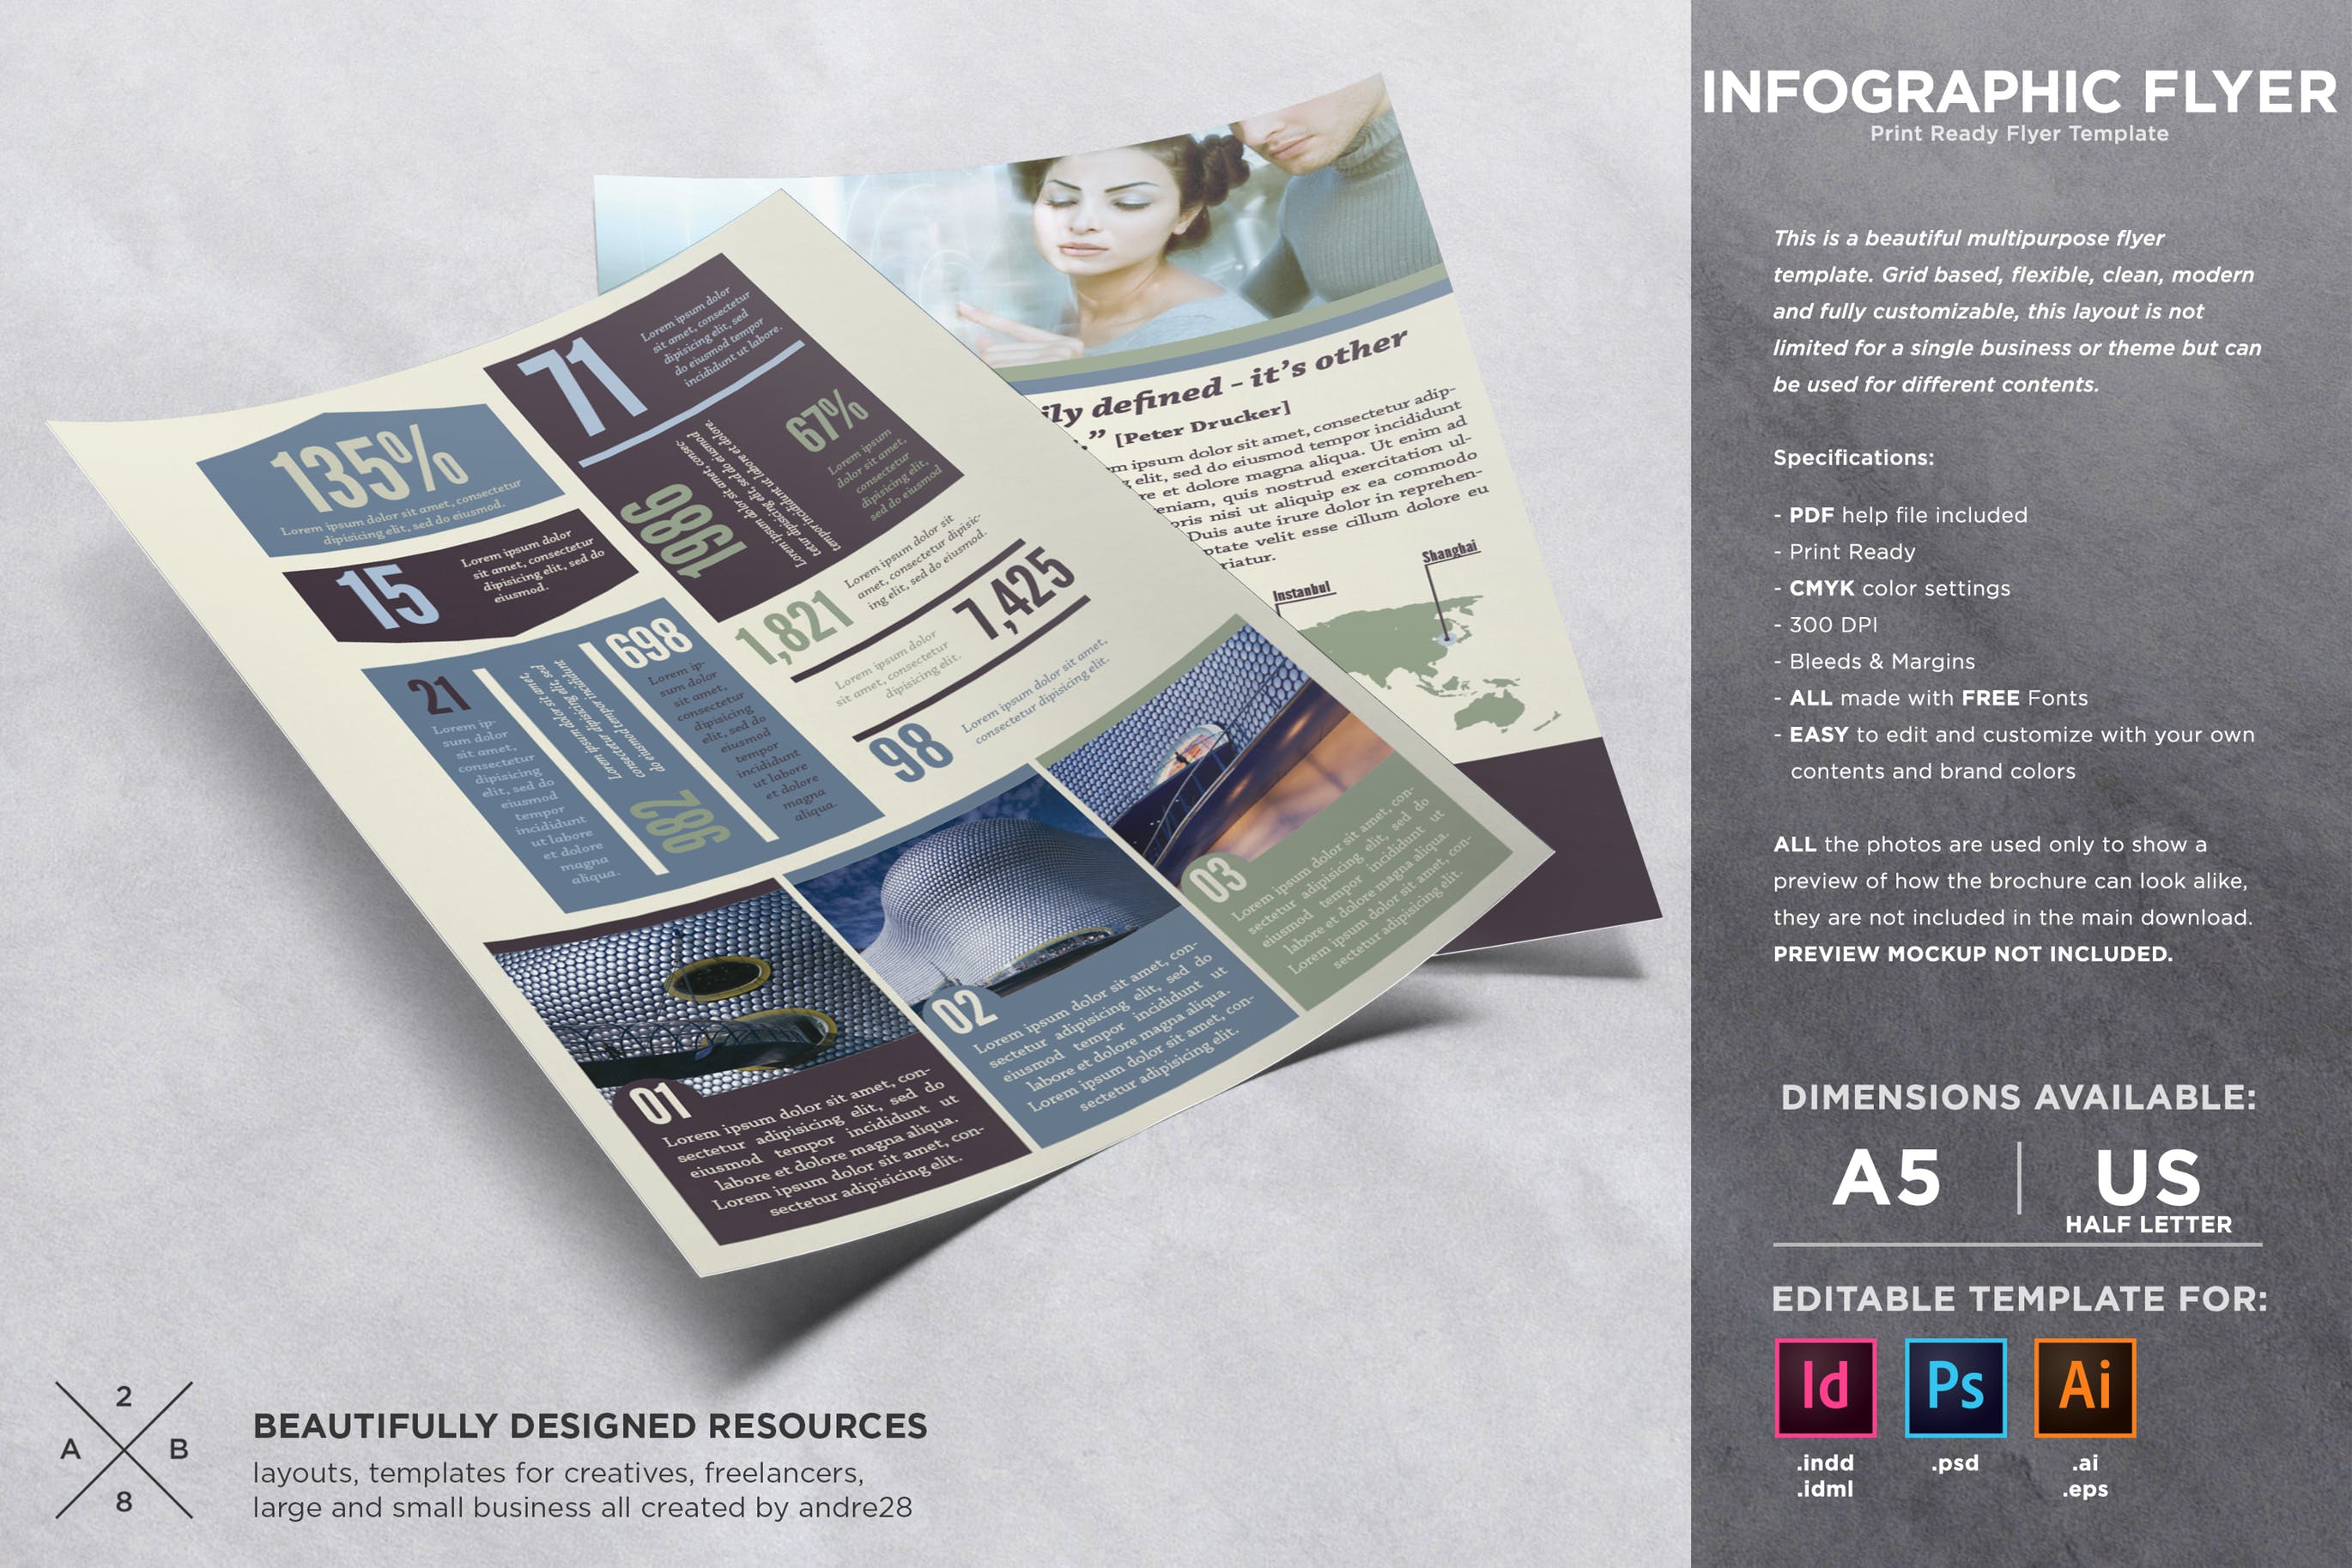 企业商业主题信息图表风格宣传单设计模板 Infographic Business Flyer Template插图